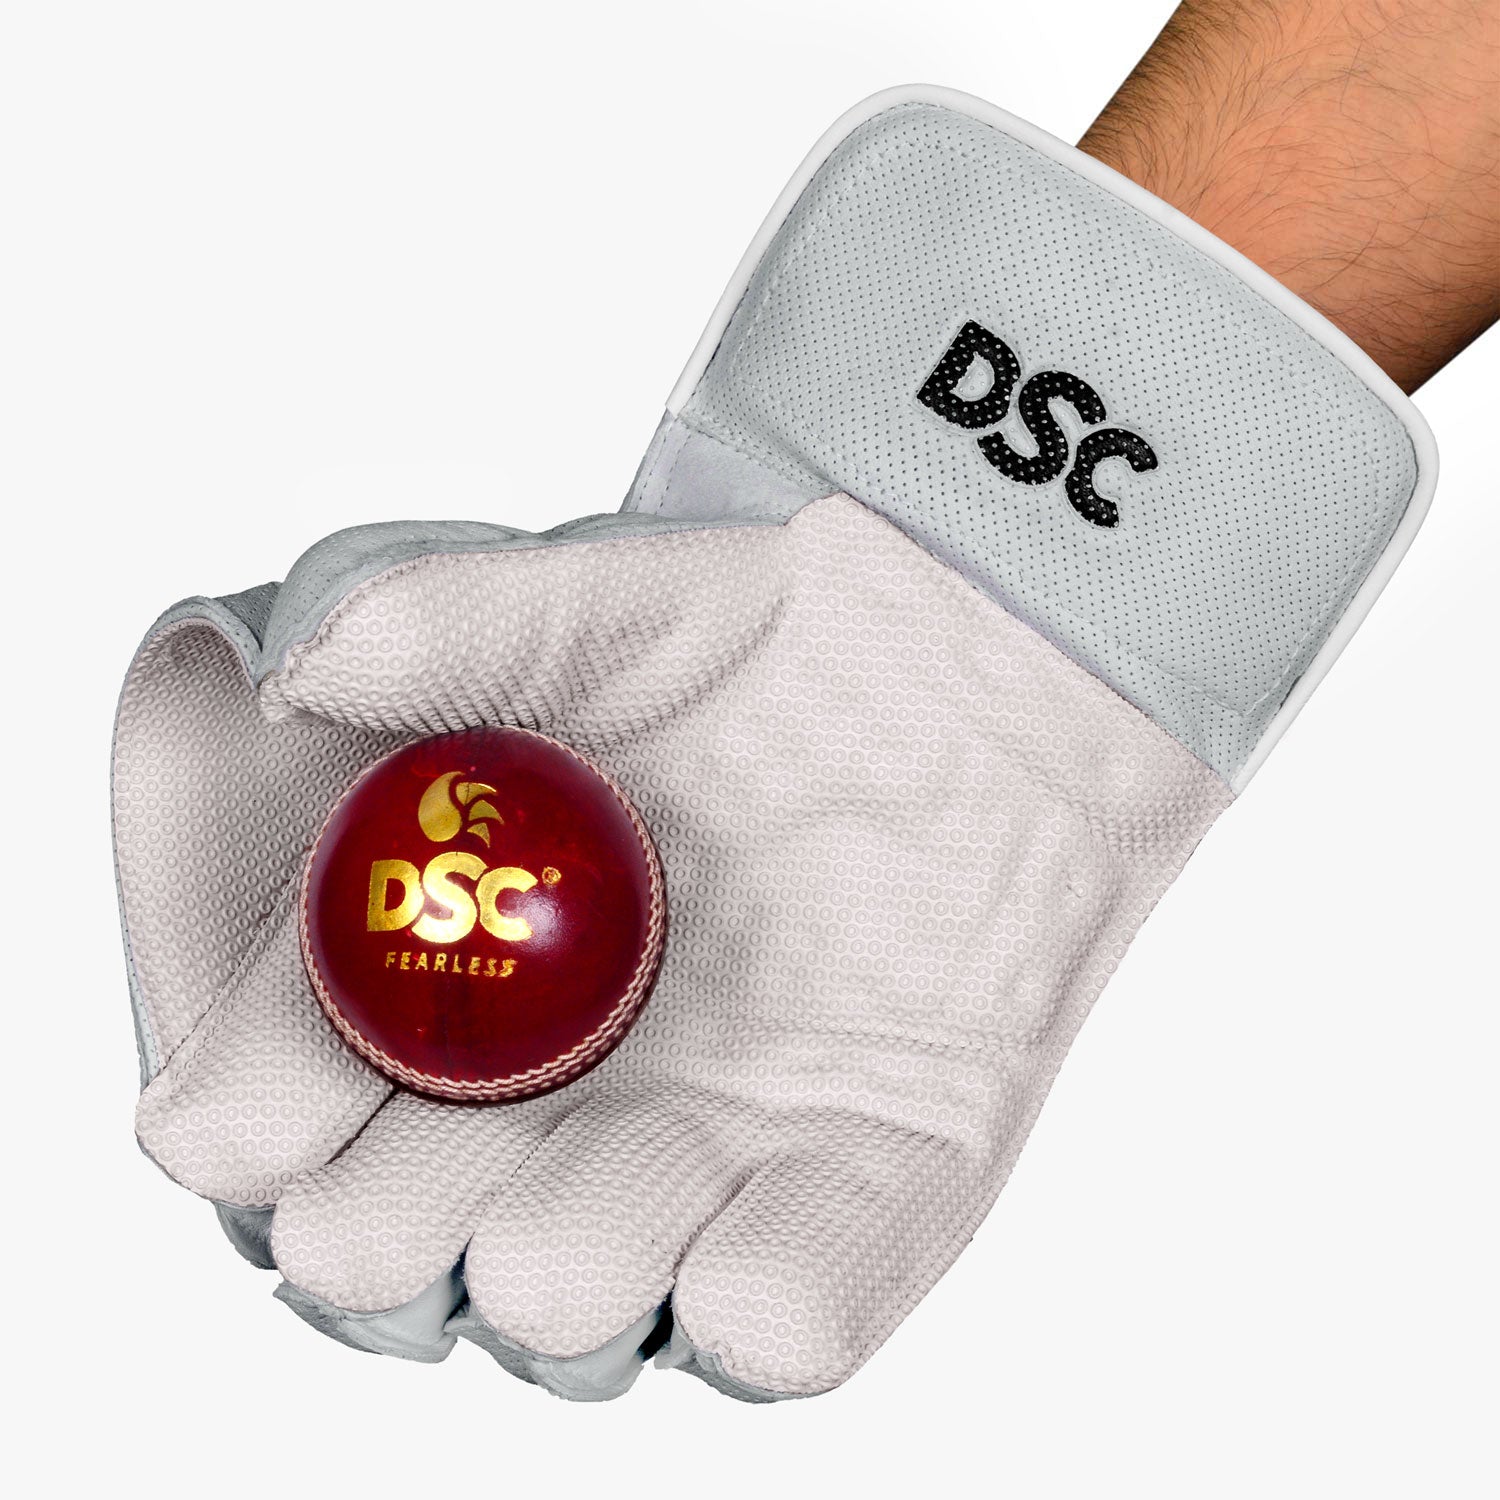 DSC Spliit Players Wicket Keeping Gloves